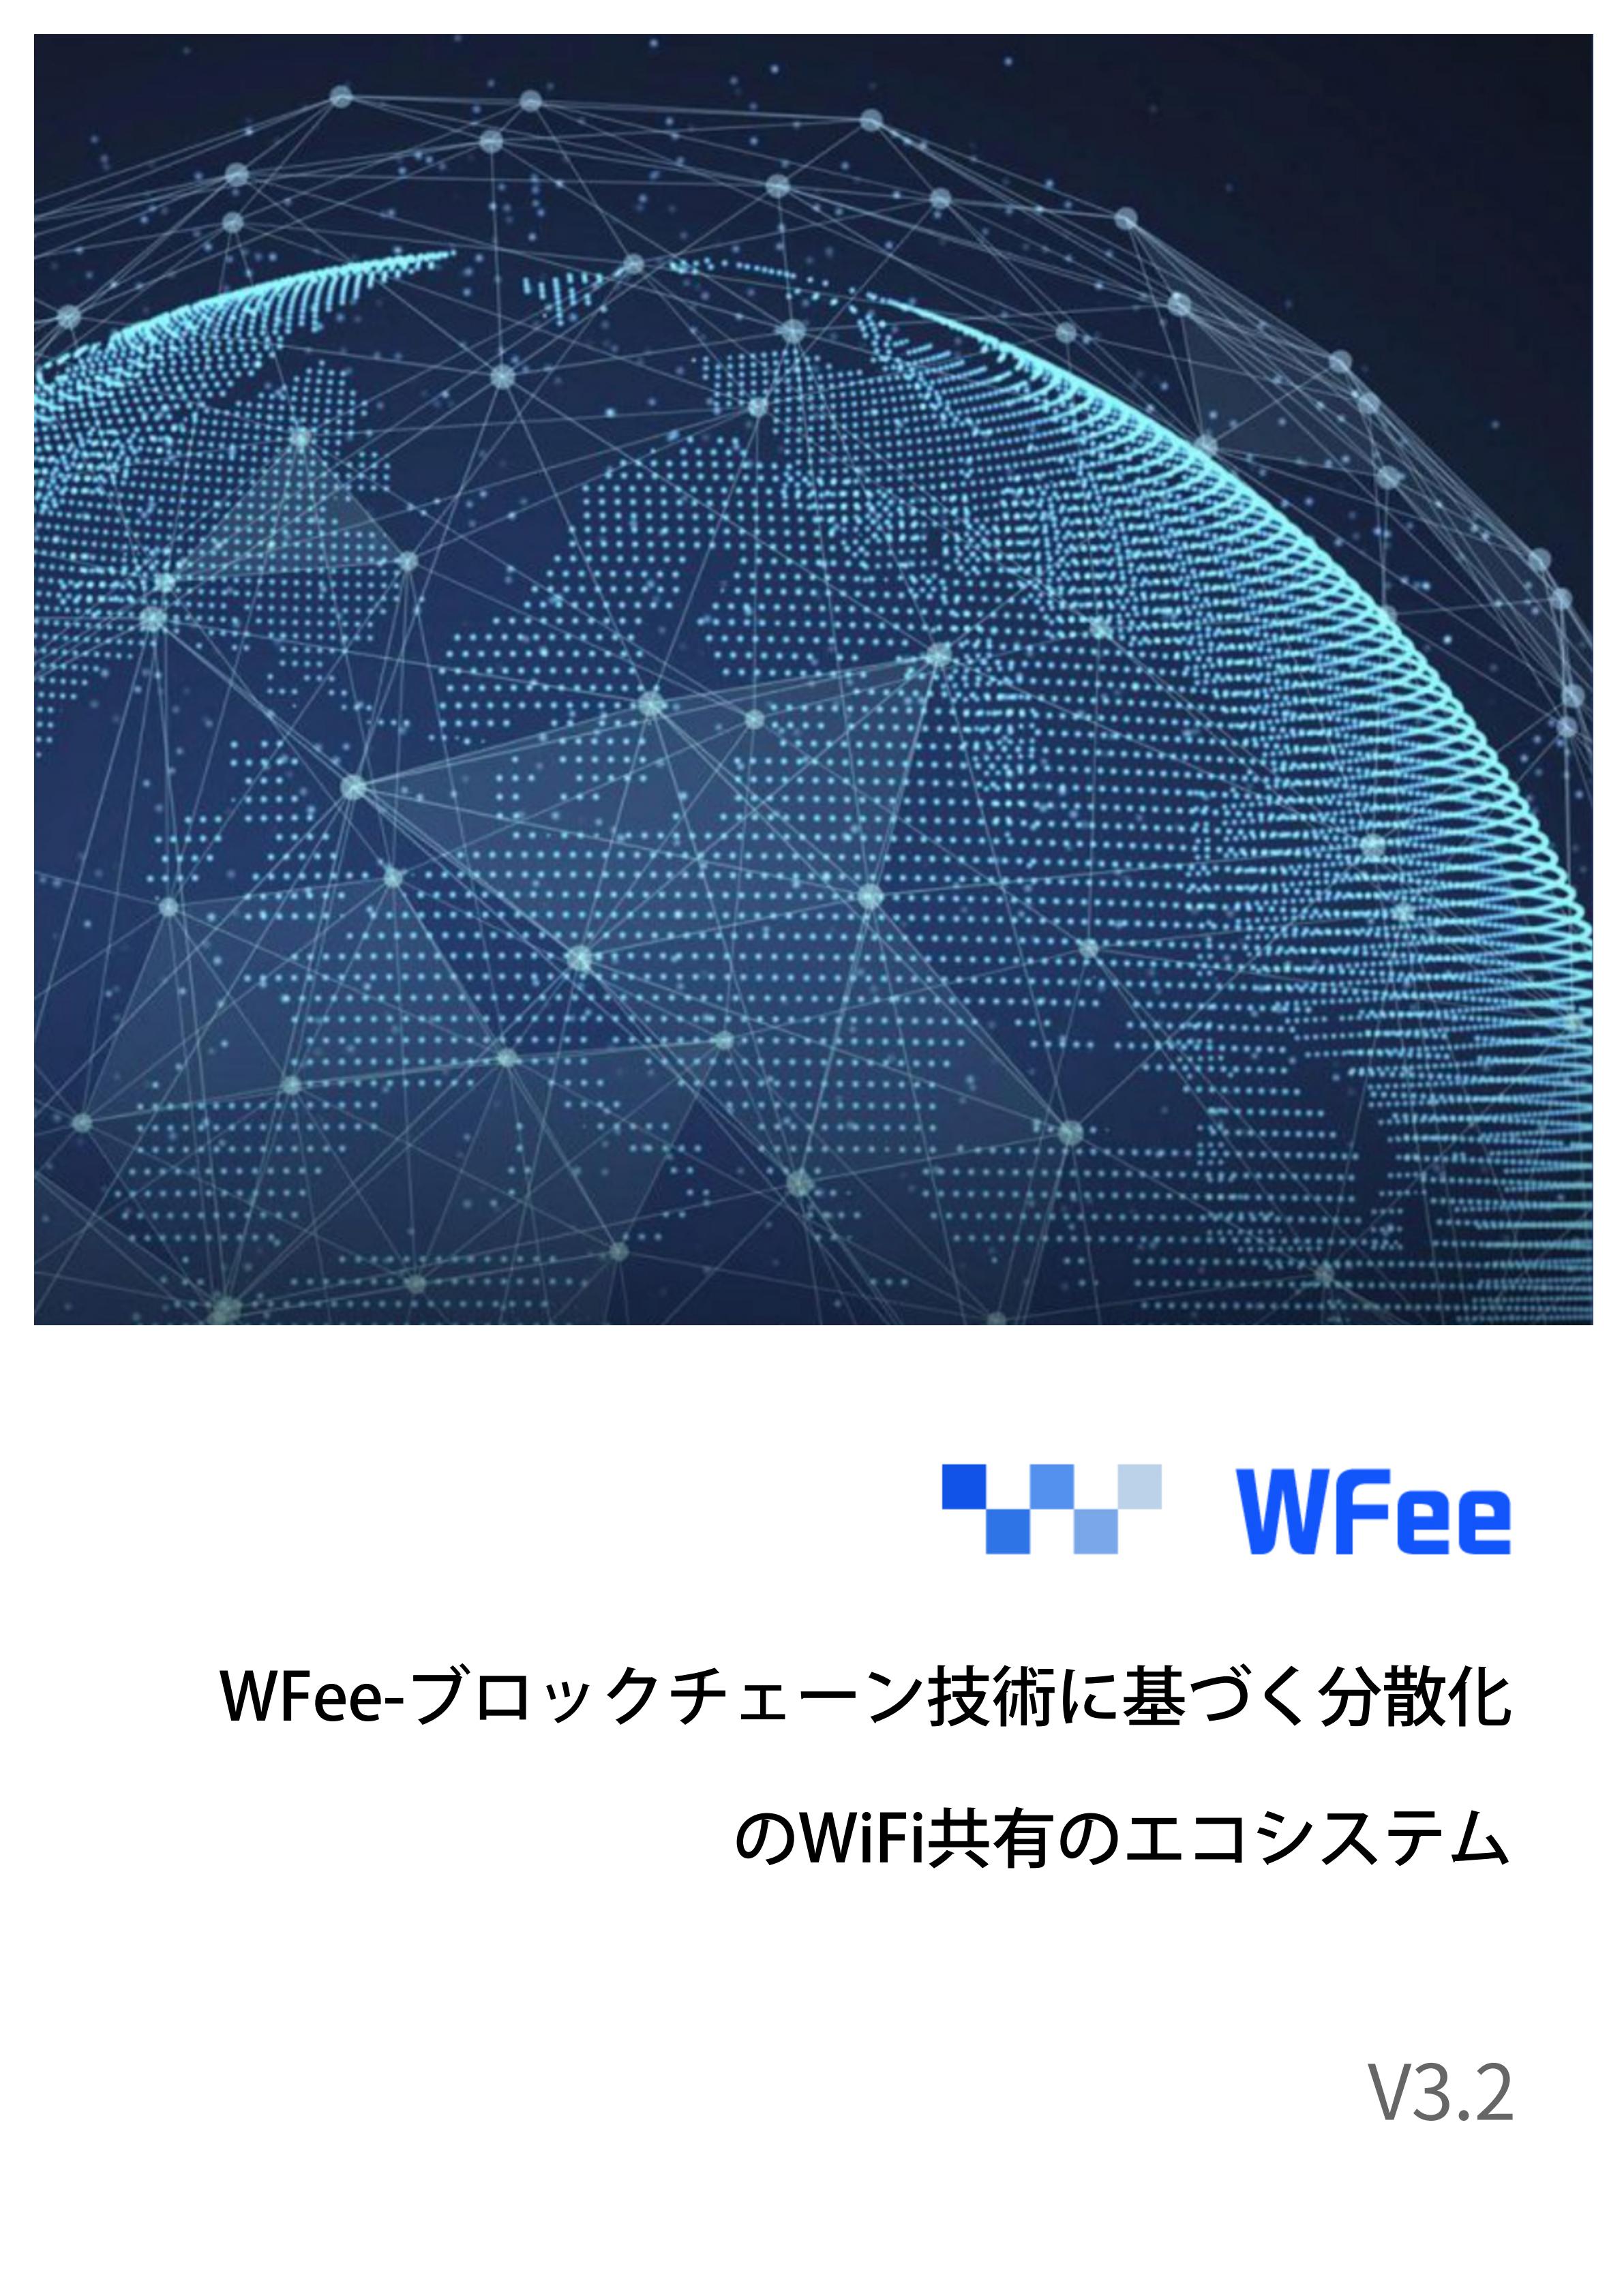 WFee_JP_00.jpg